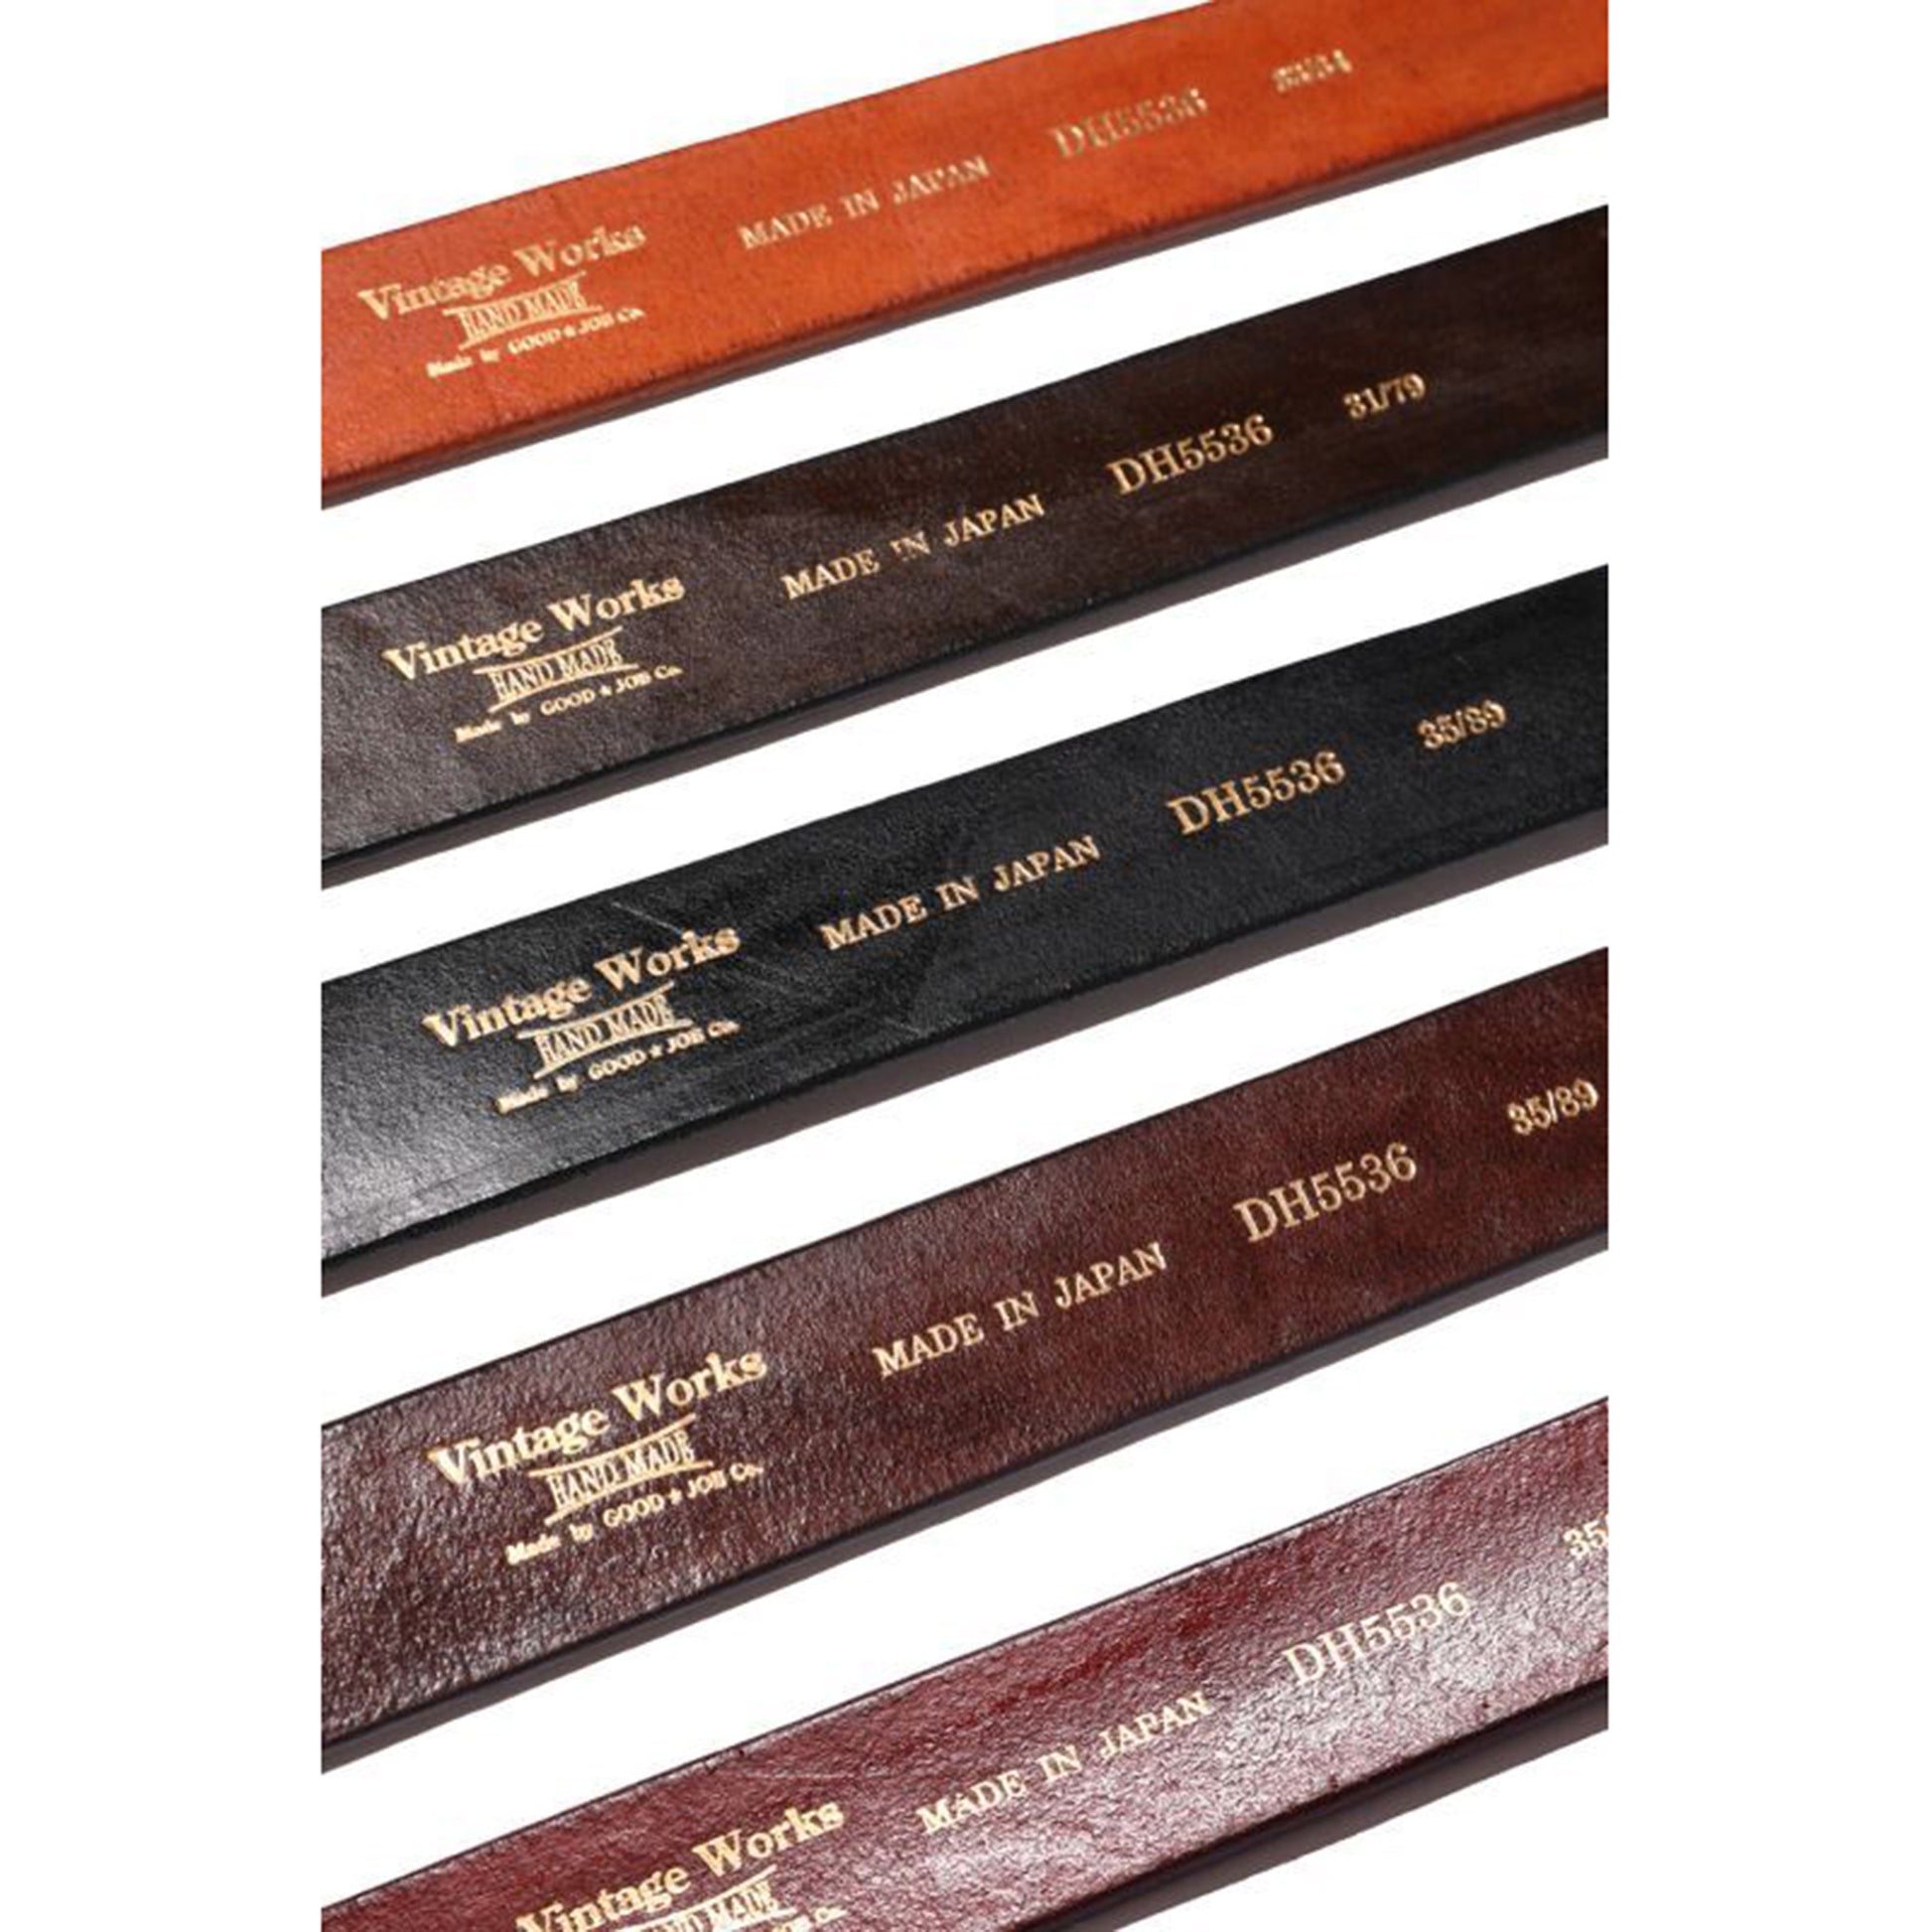 Vintage Works Leather Belt 7Hole Garrison Belt【DH5536】 – JELADO